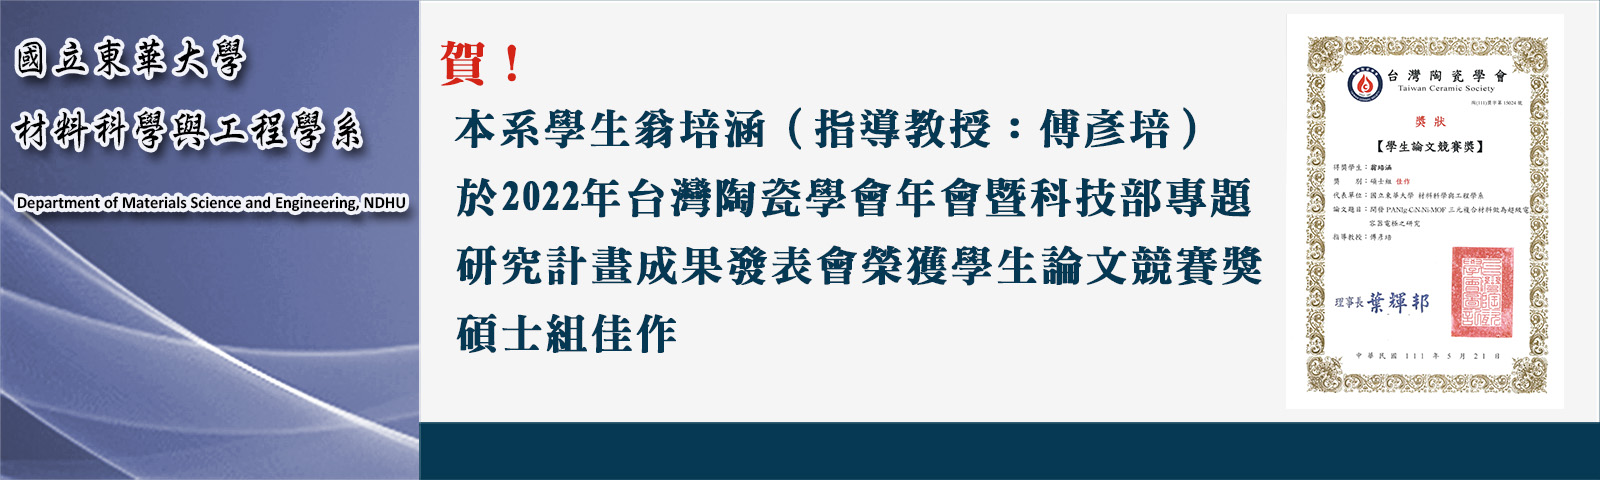 賀！本系學生翁培涵（指導教授：傅彥培）於於2022年台灣陶瓷學會年會暨科技部專題研究計畫成果發表會榮獲學生論文競賽獎碩士組佳作